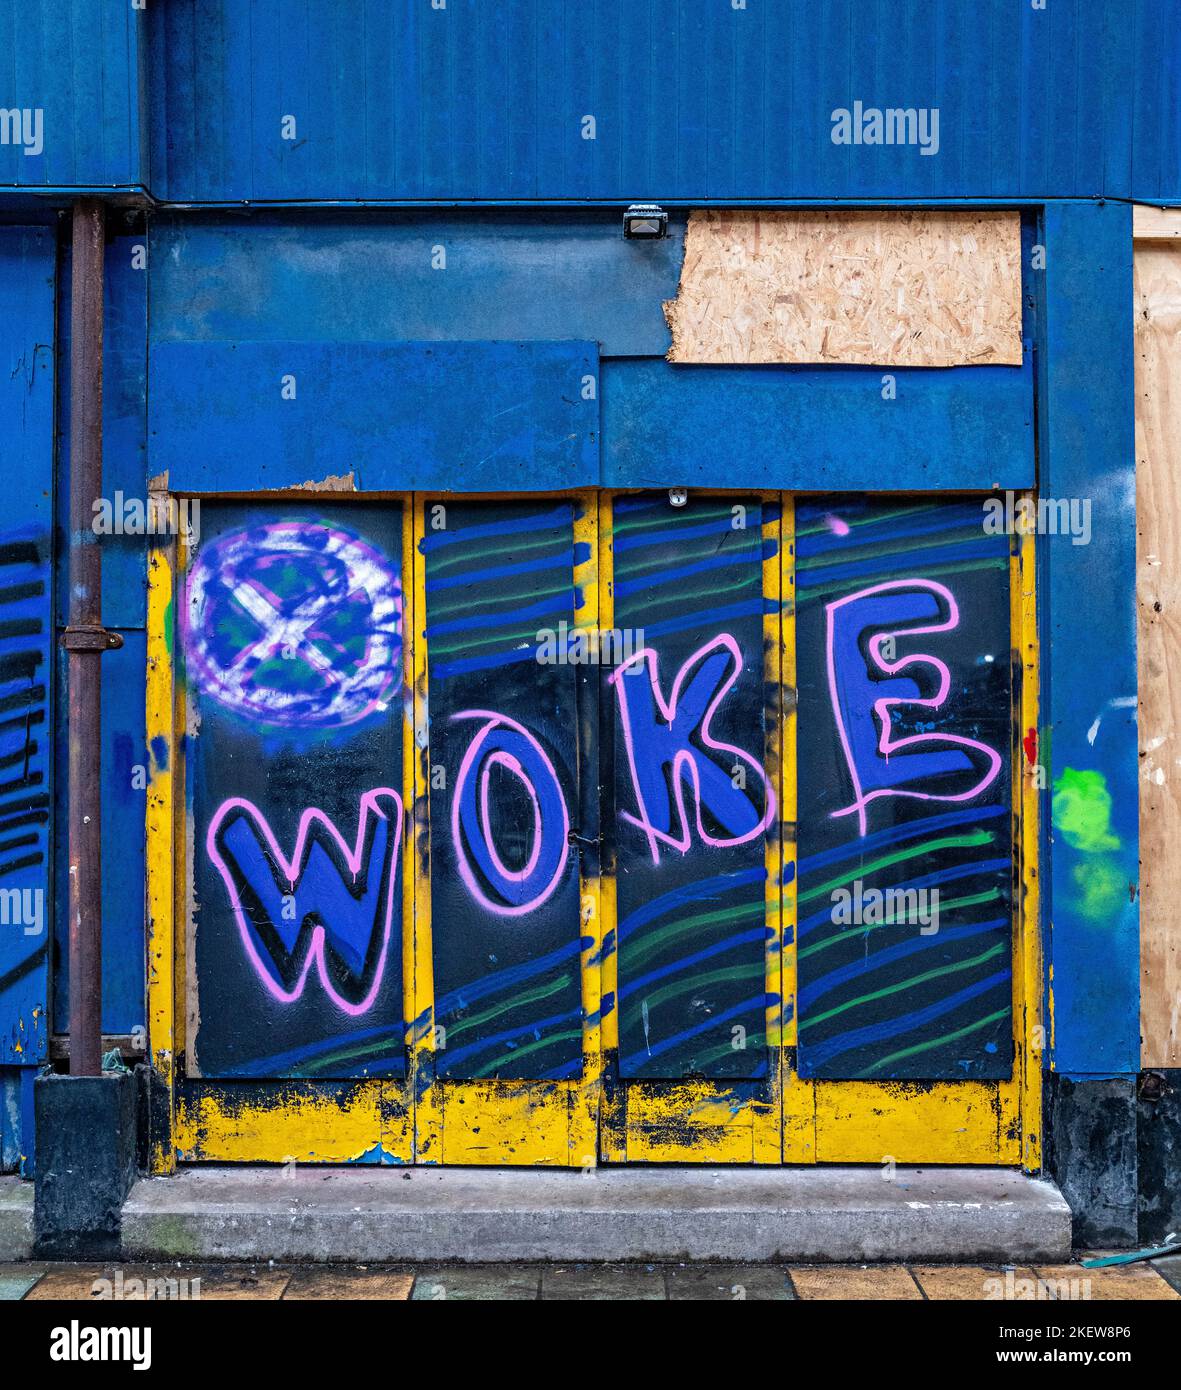 Woke - Graffiti Stock Photo